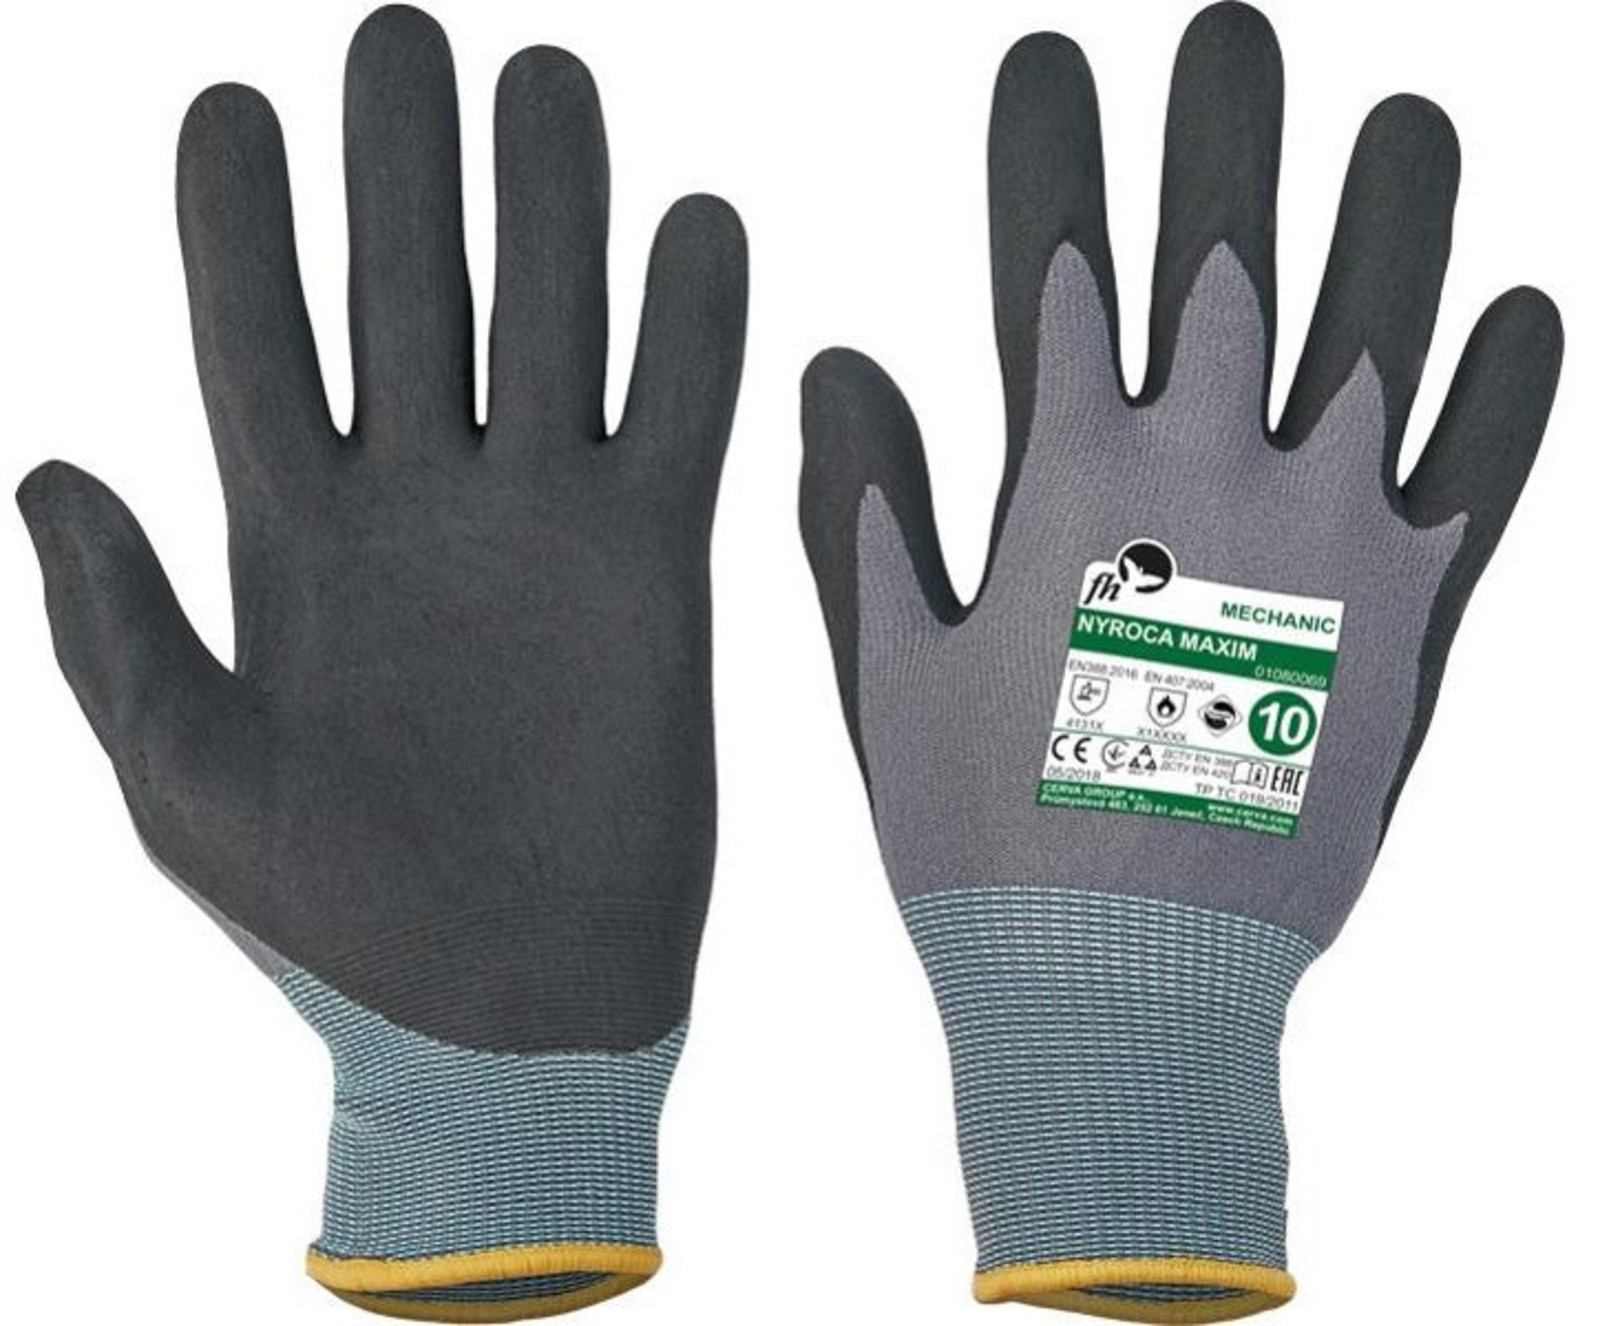 Pracovné rukavice Nyroca Maxim - veľkosť: 10/XL